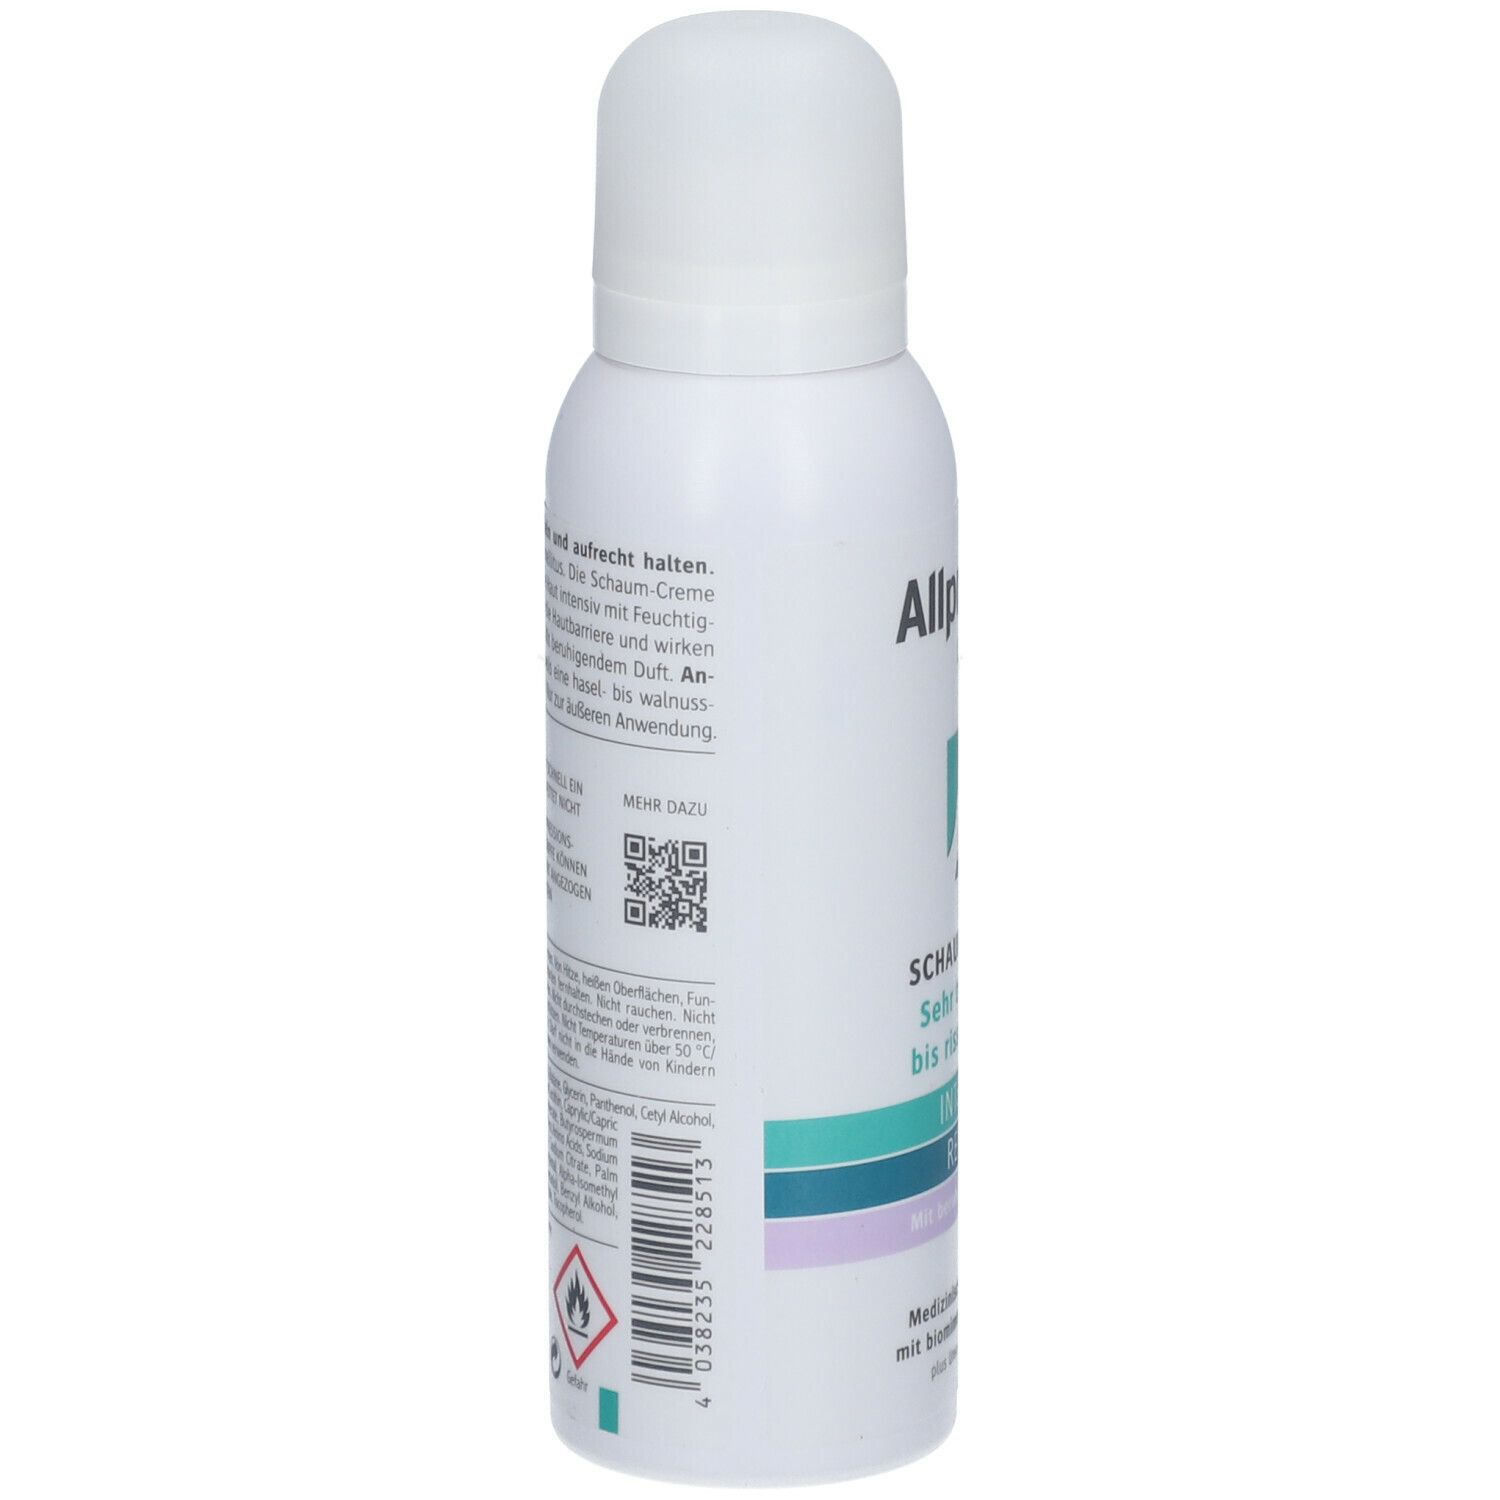 Allpresan® diabetic Schaum-Creme Intensiv+ Repair